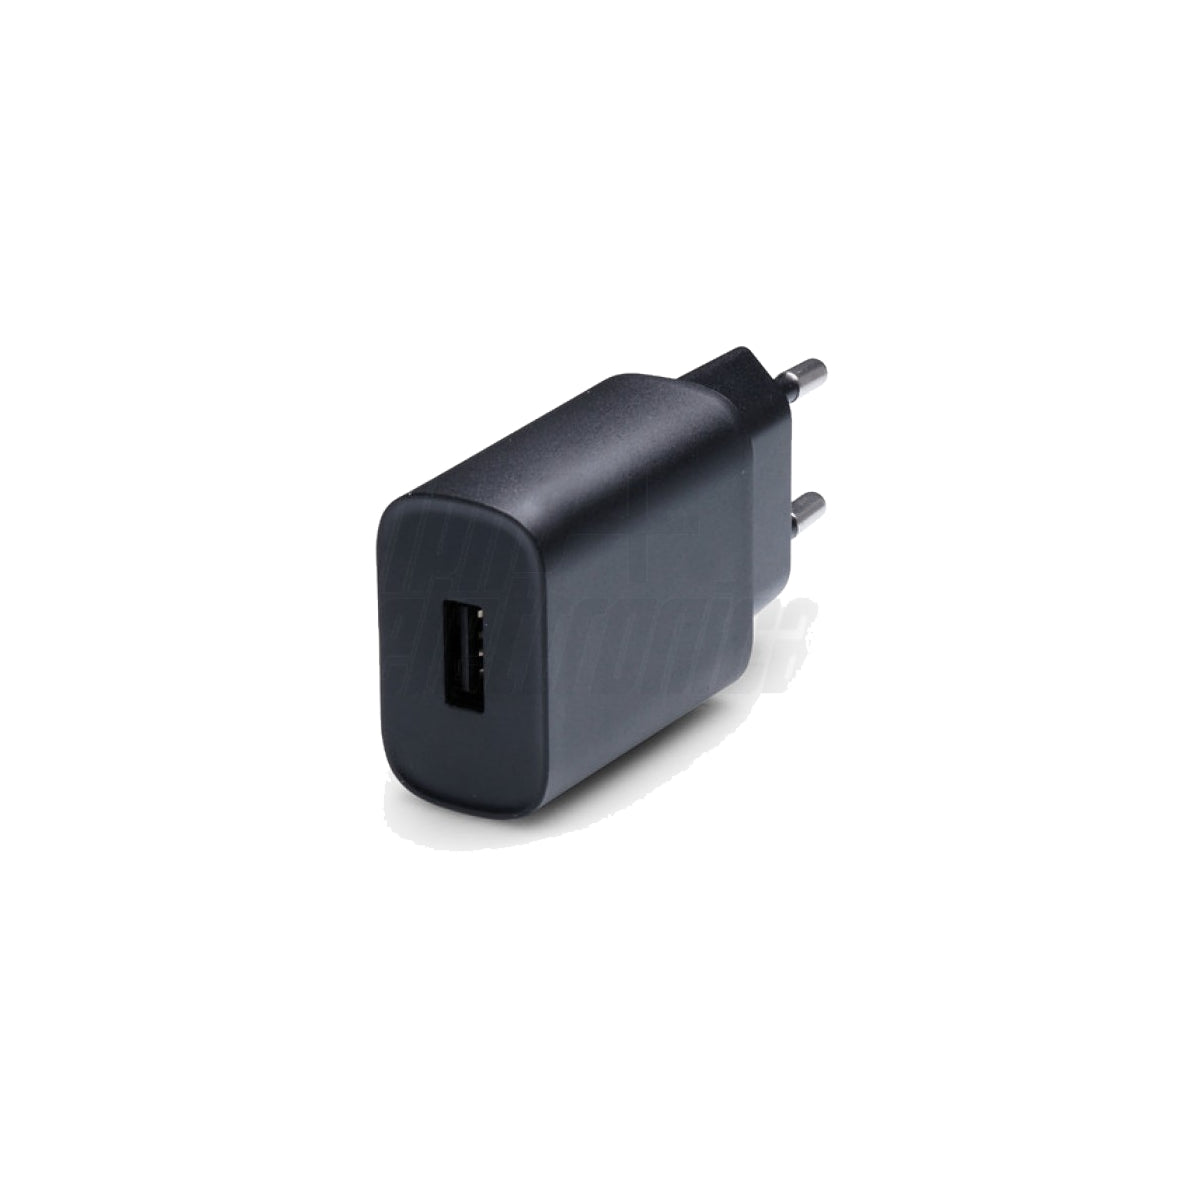 Caricabatterie con Adattatore da Muro per Smartphone, USB 2.1A